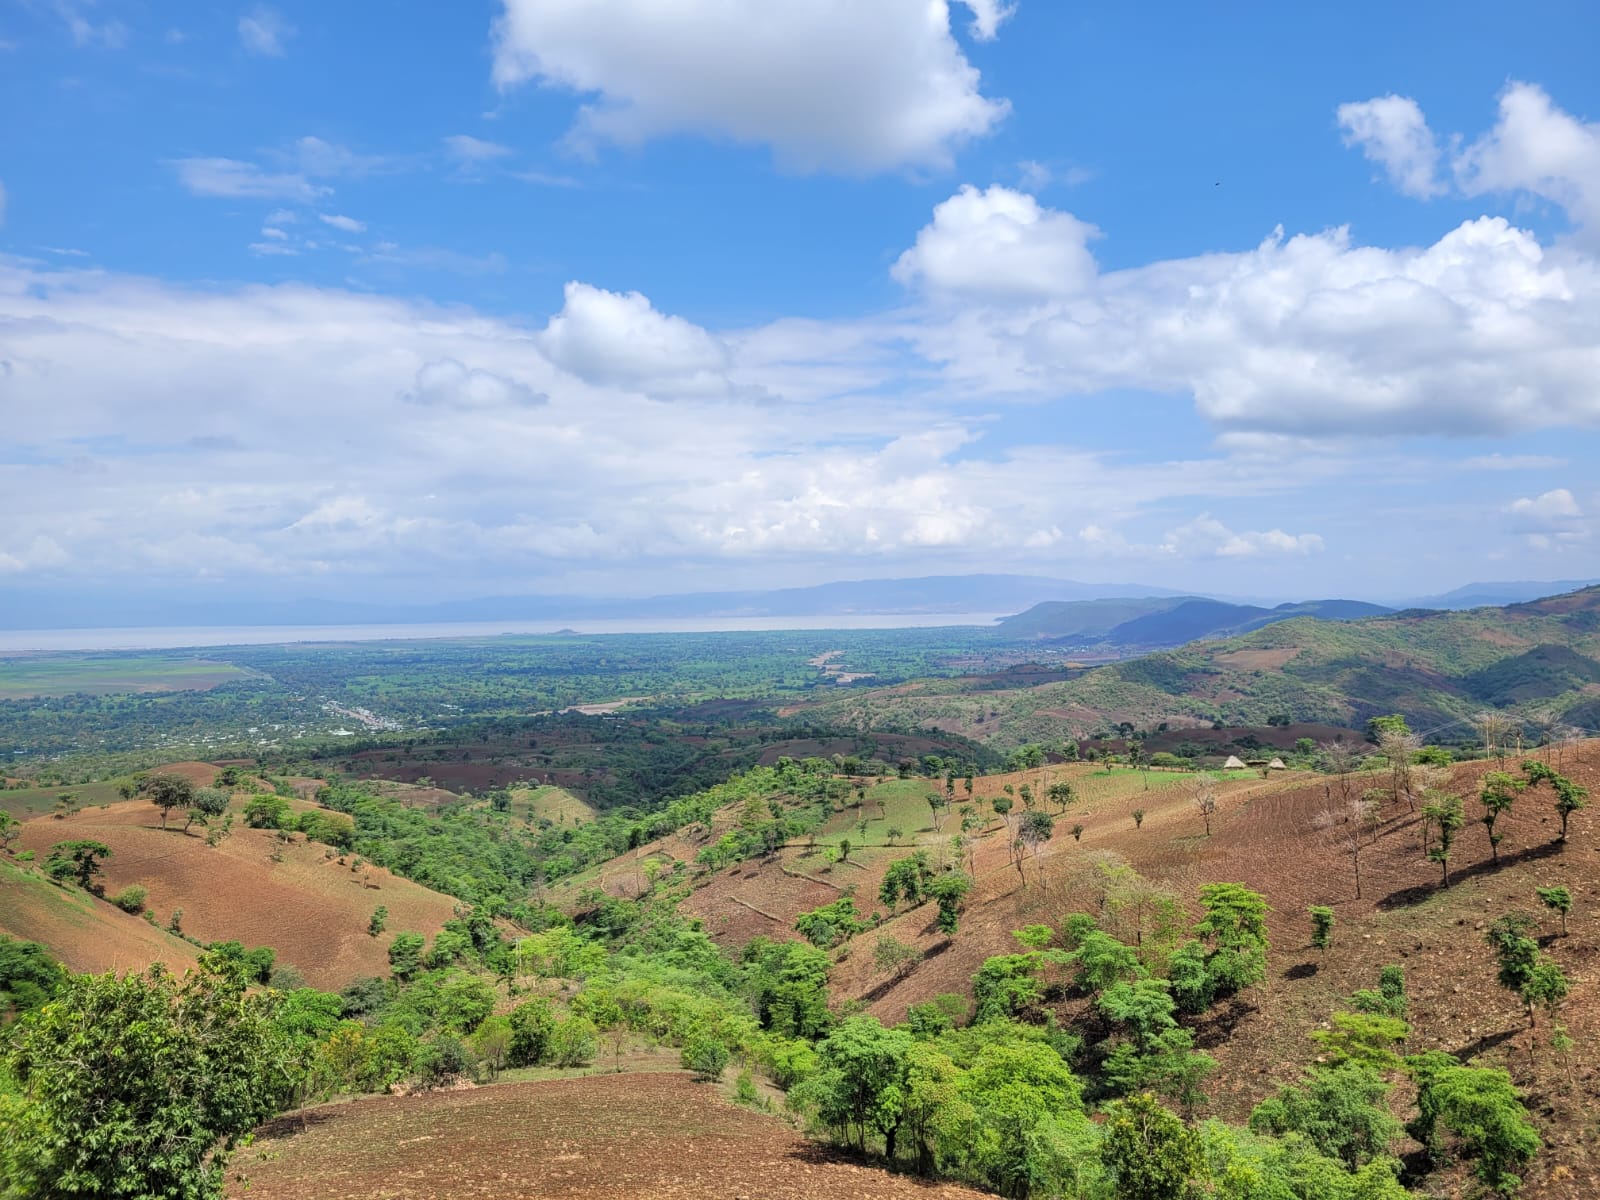 Landscape in Ethiopia.